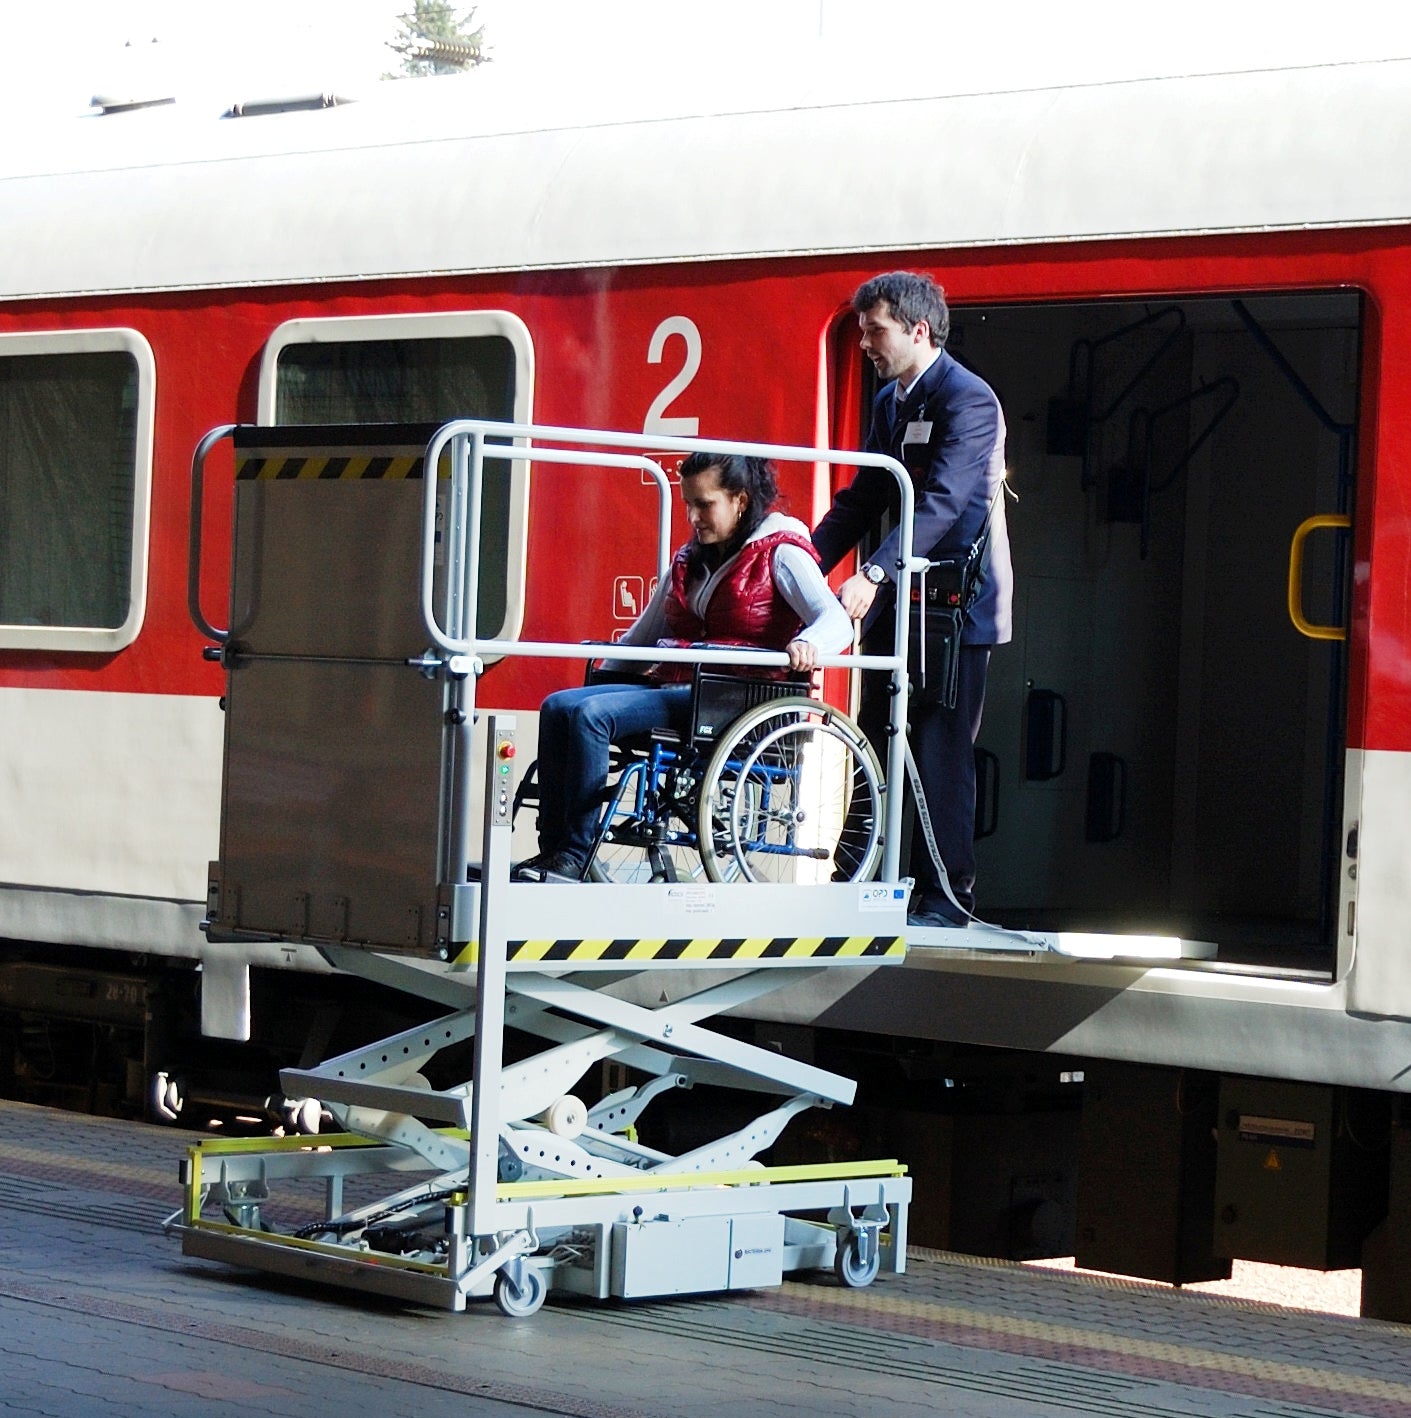 Купить места для инвалидов в поезде. Вагон для инвалидов колясочников РЖД. Спецвагон для инвалидов РЖД. Подъемник для инвалидов в вагоне. Вагон для маломобильных пассажиров.